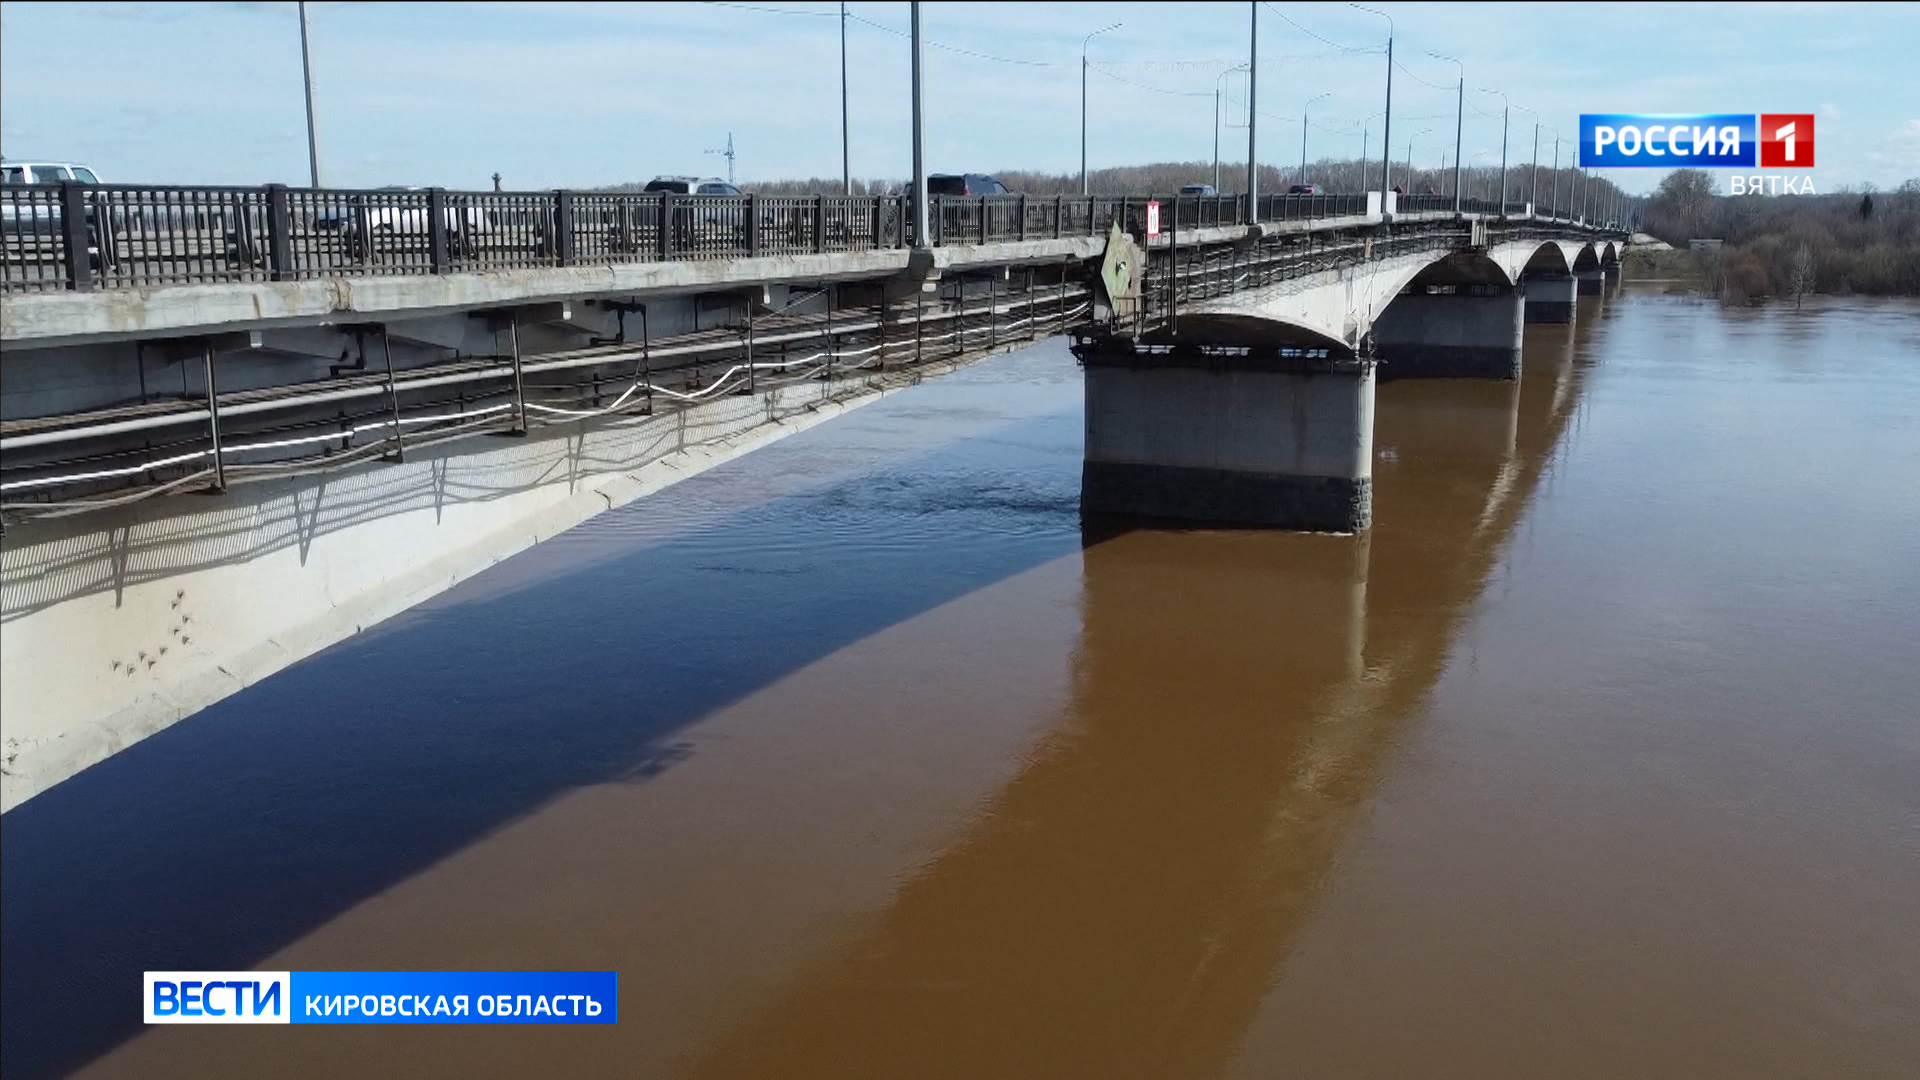 Будущей ночью на старом мосту через Вятку в Кирове начнутся ремонтные работы